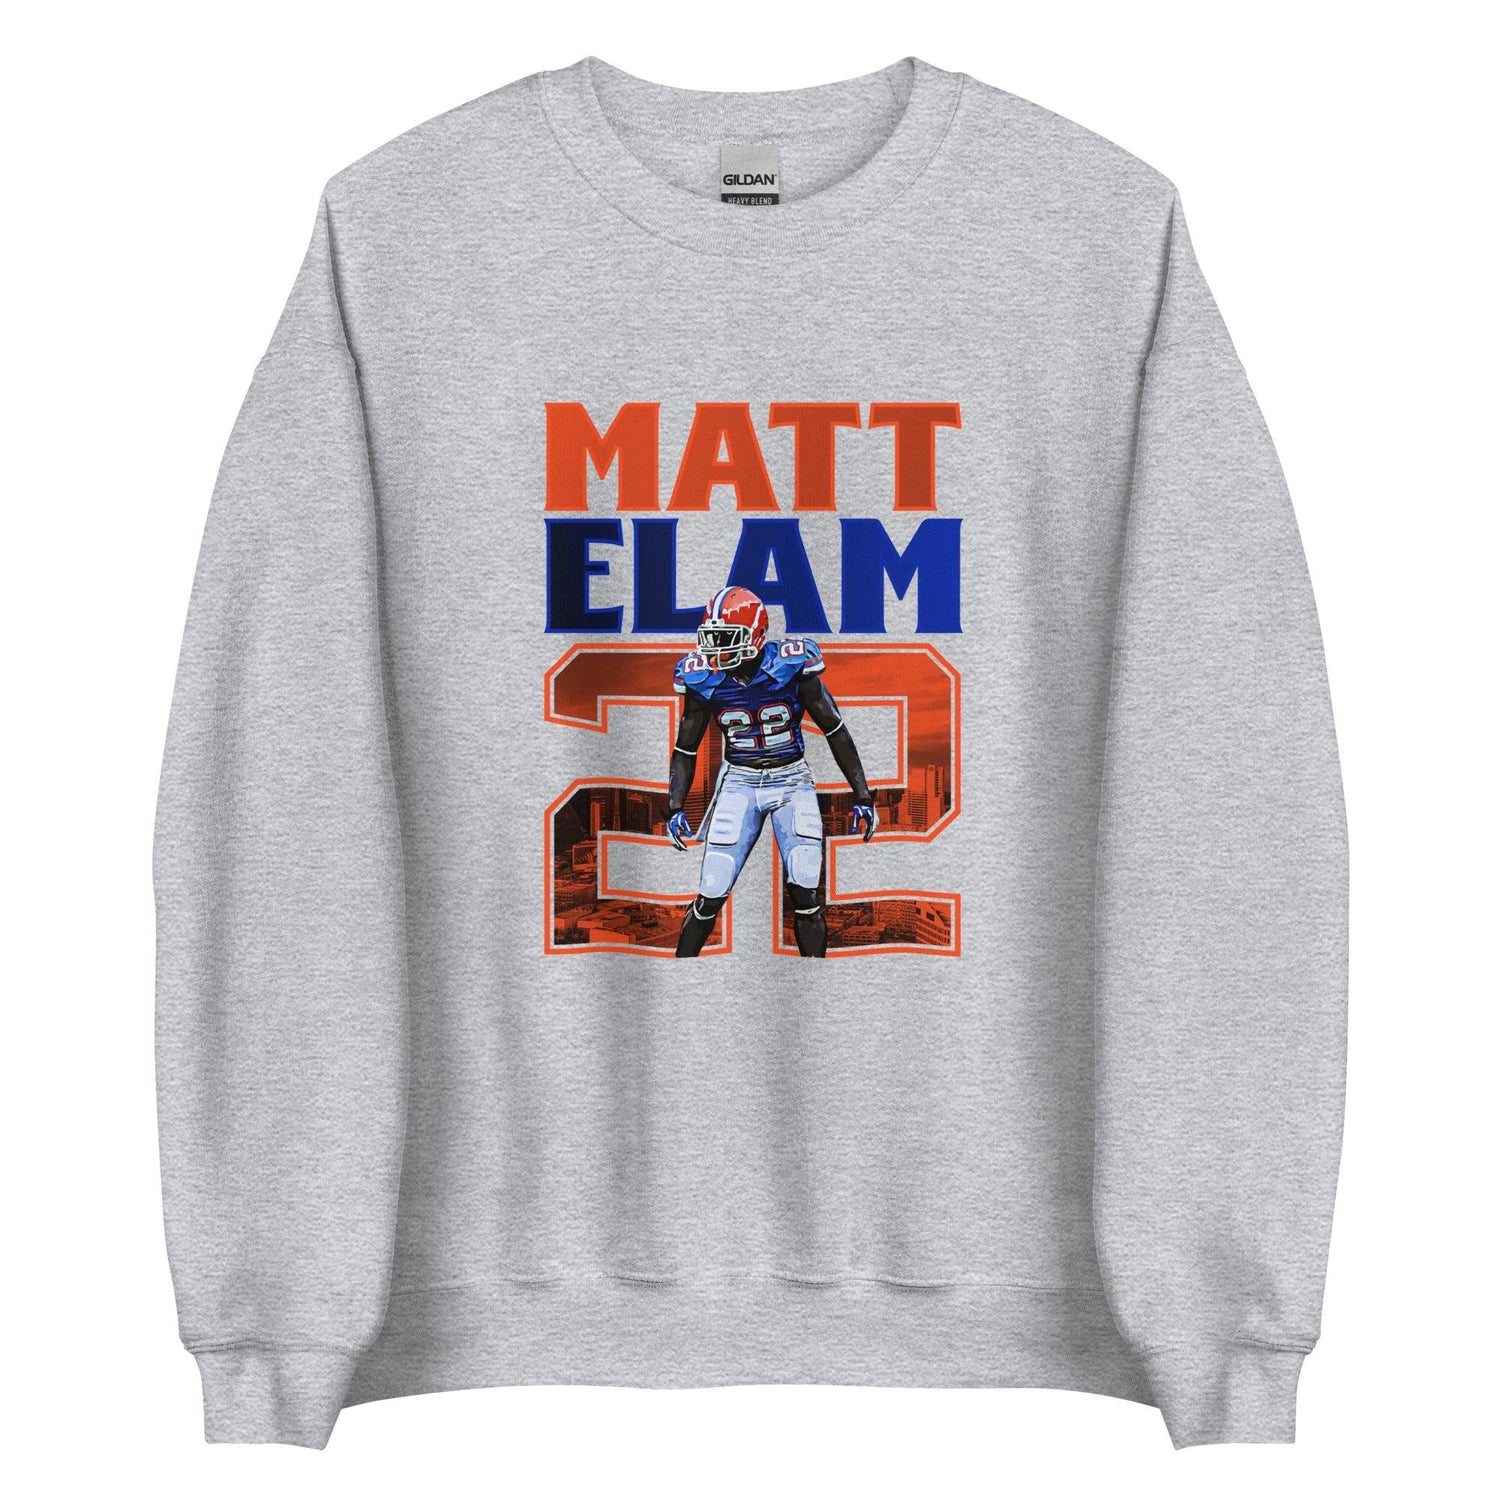 Matt Elam "Gameday" Sweatshirt - Fan Arch